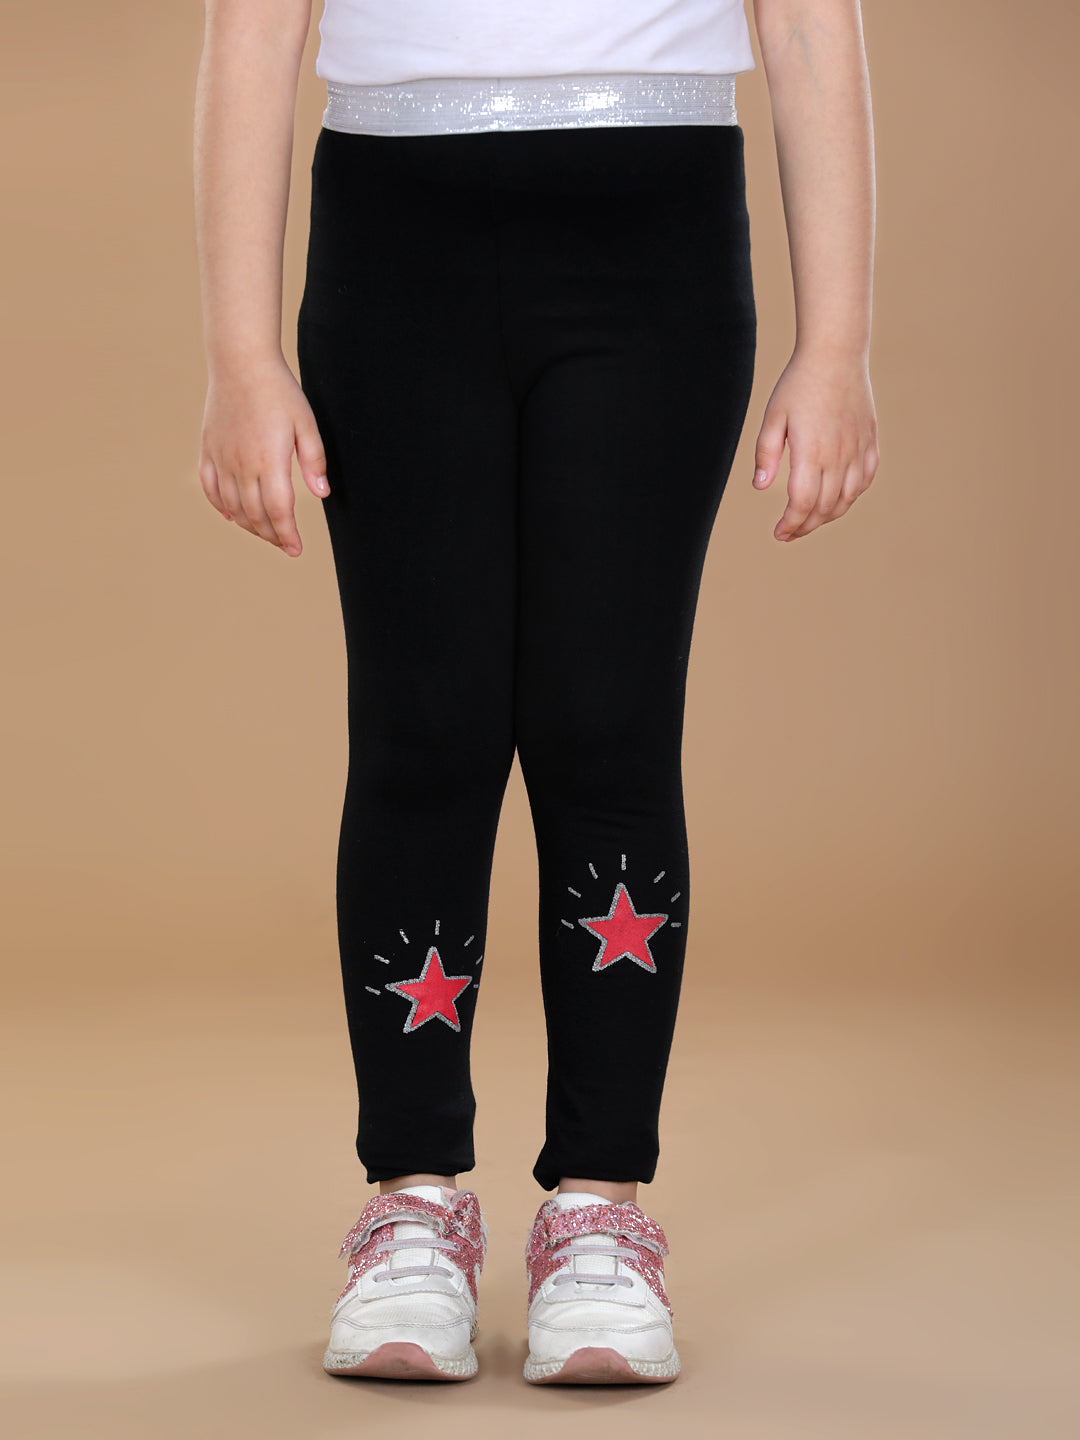 Girls Pack of 2 Star Printed Leggings- Red & Black – Stylestone